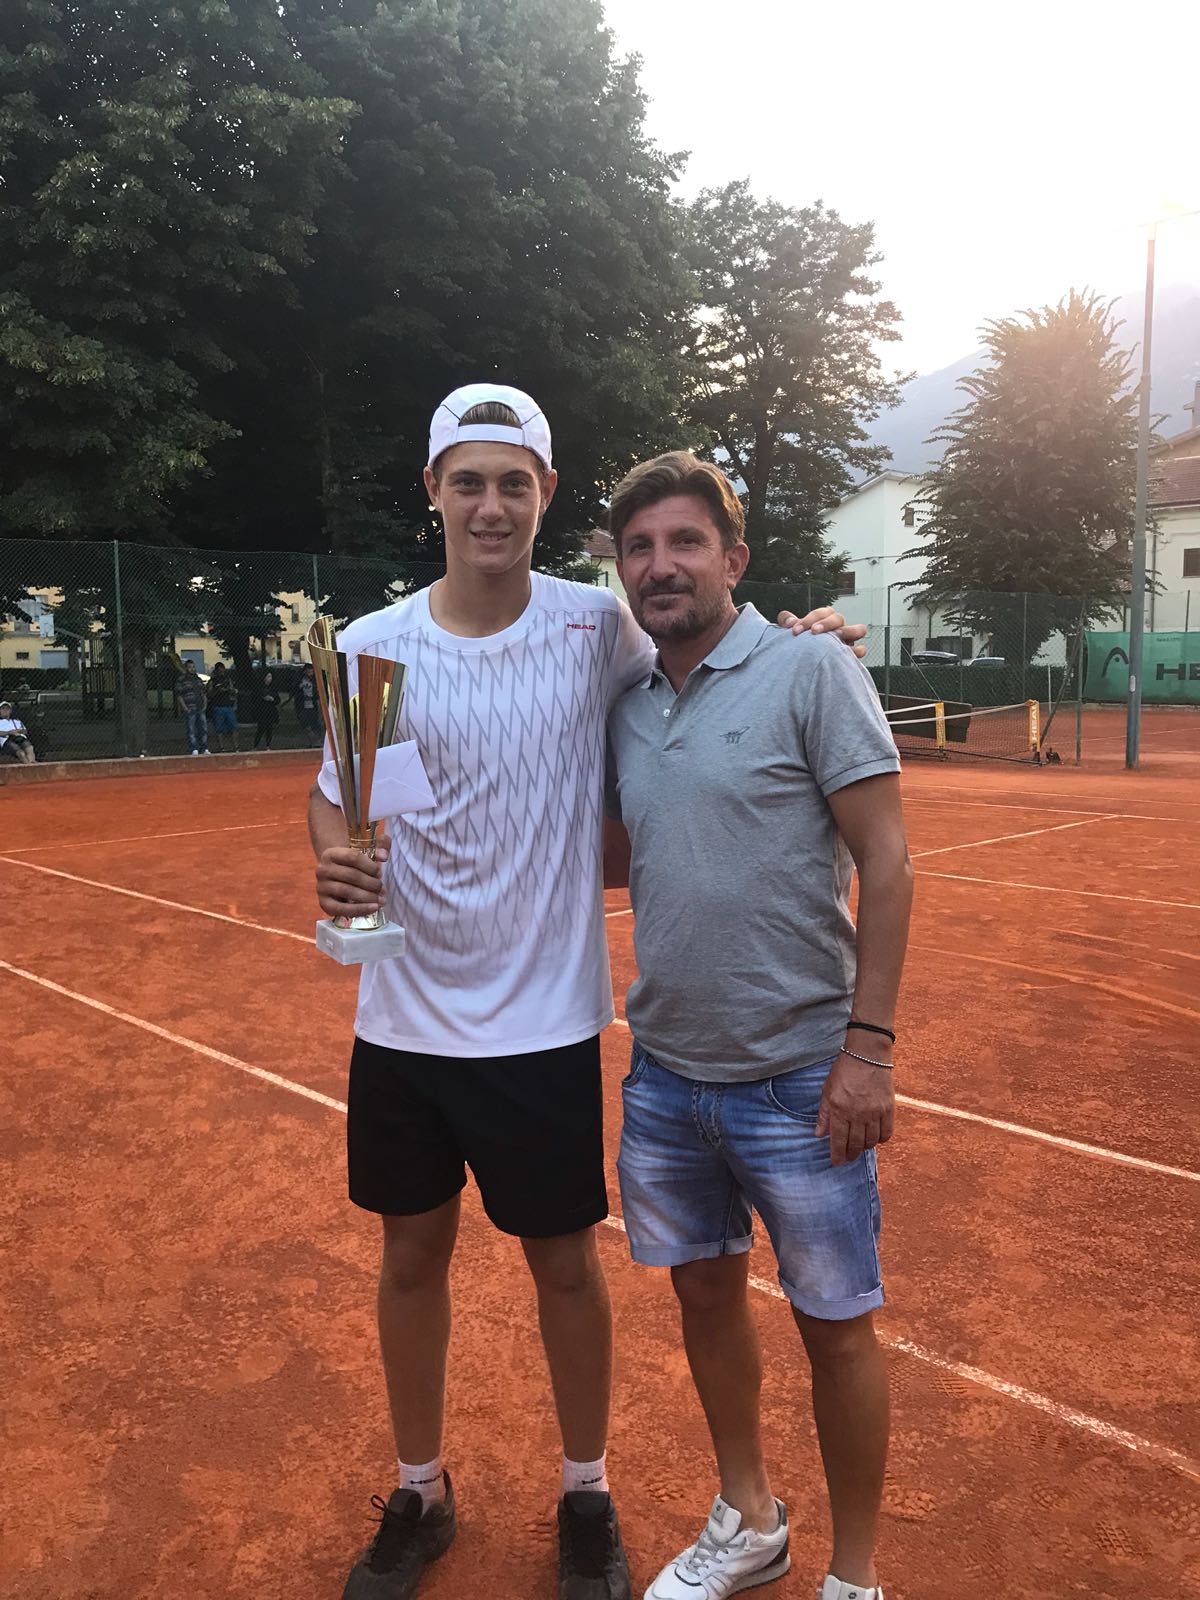 VITA DA ACCADEMIA. Matteo Giordano trionfa nel torneo nazionale di Terza categoria di Castel di Sangro. Vittoria n.61 per l’Accademia Tennis Napoli nel 2018.